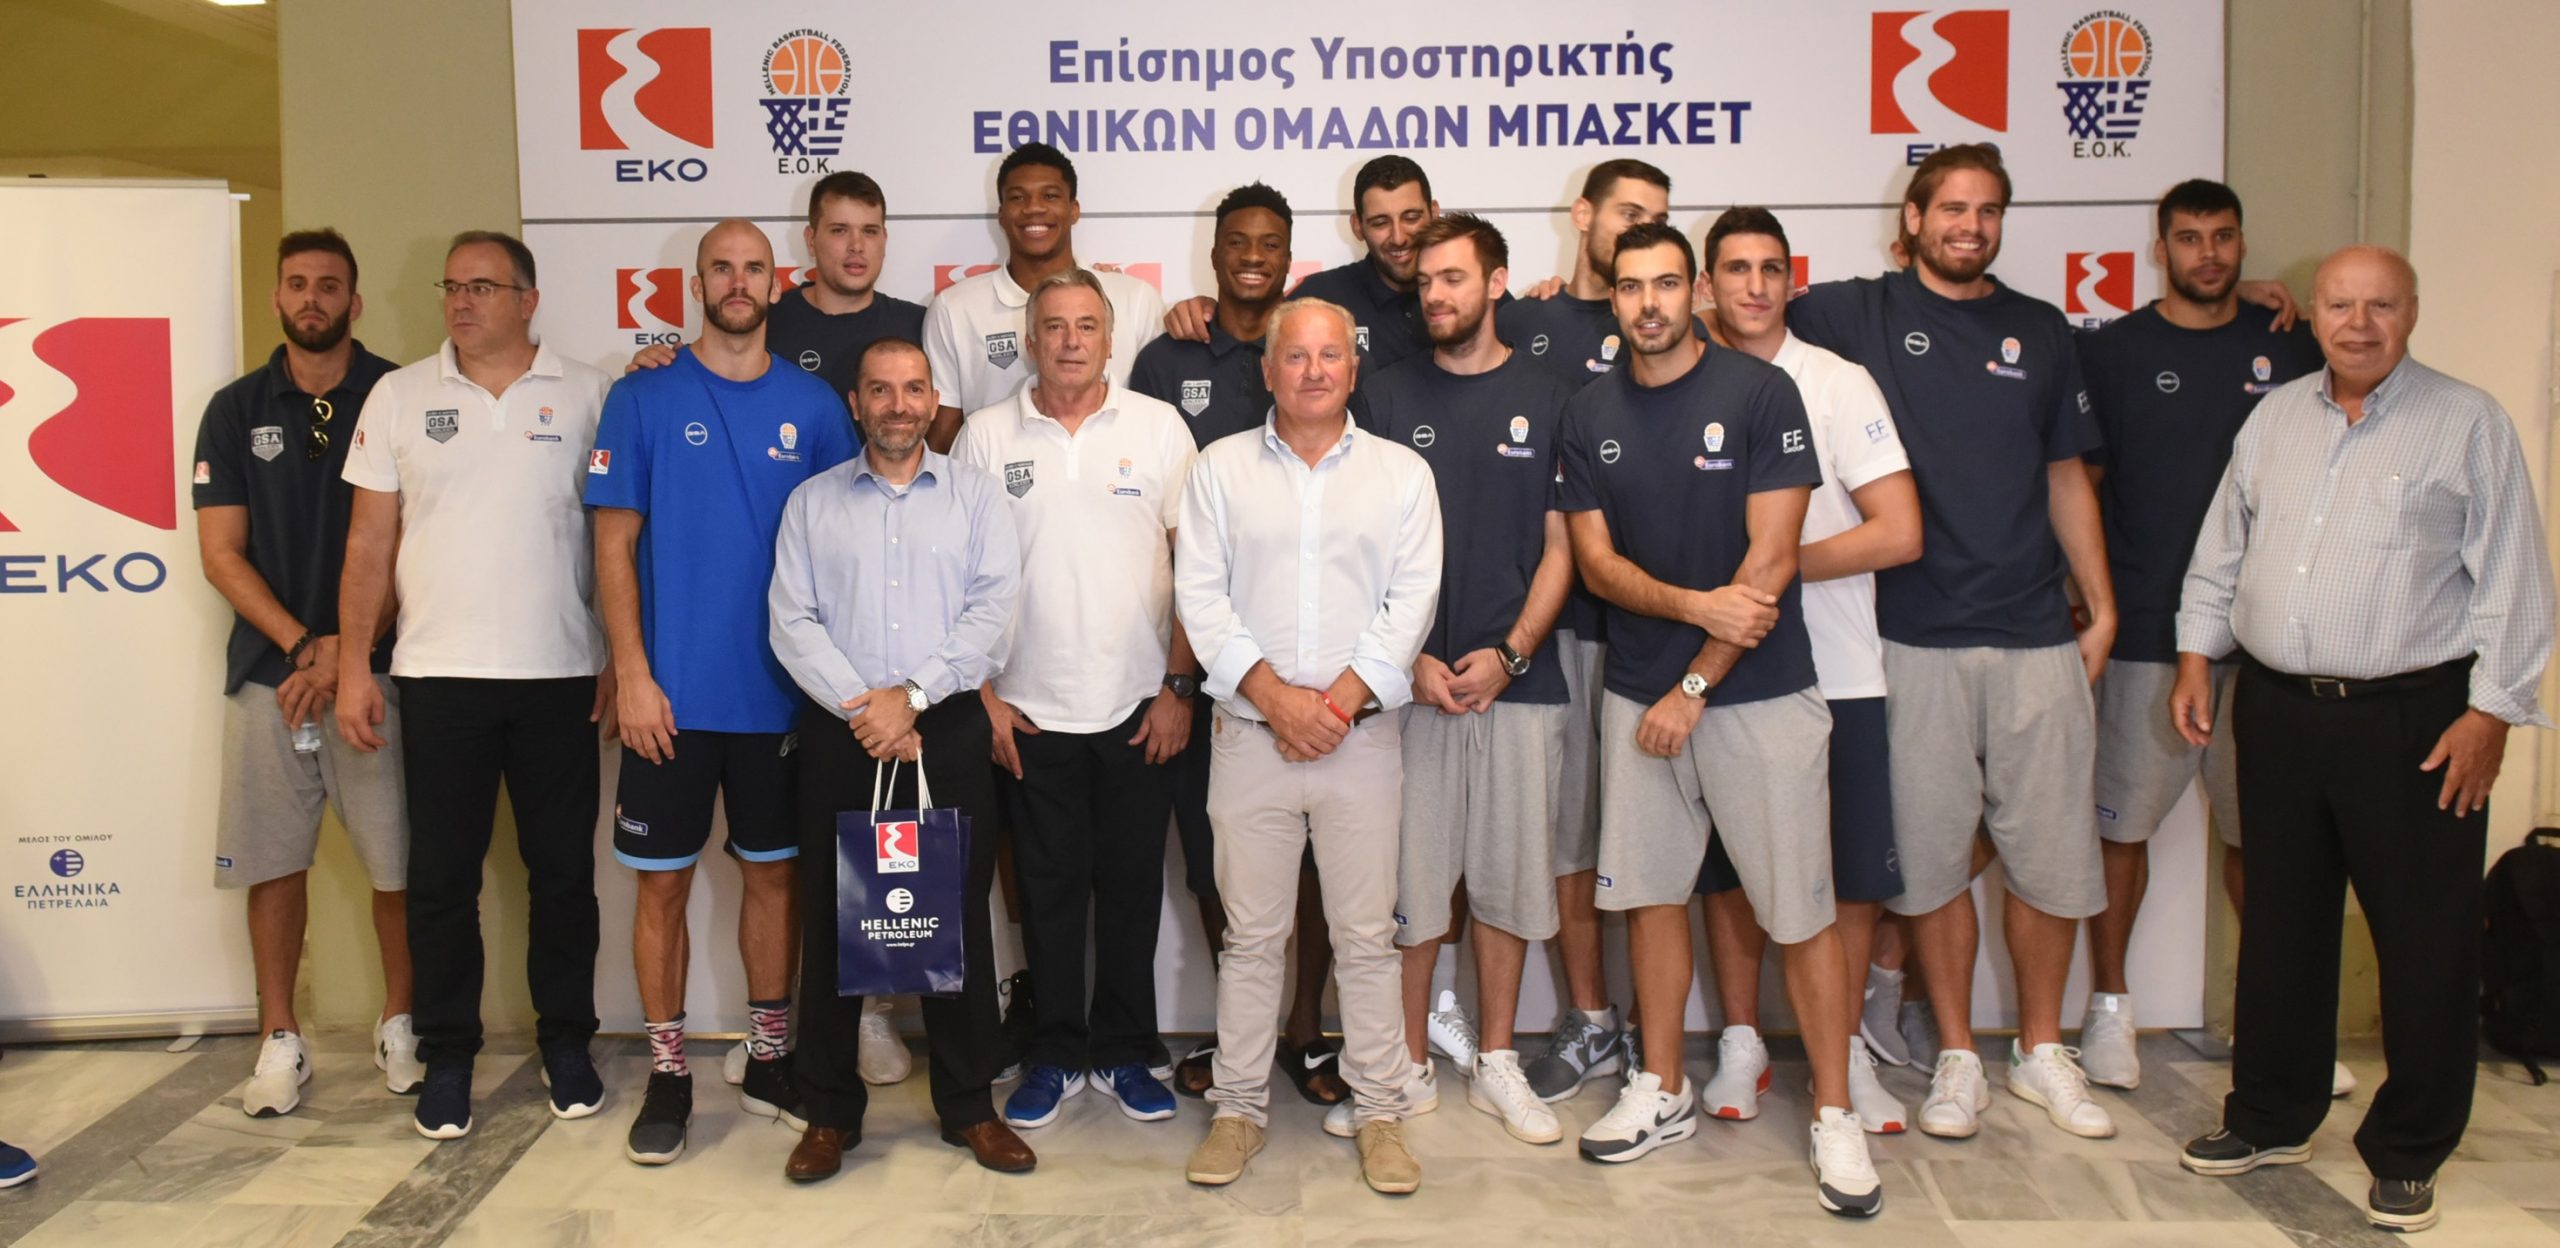 Η ΕΚΟ ευχήθηκε ΚΑΛΗ ΕΠΙΤΥΧΙΑ στην Εθνική Ομάδα Μπάσκετ για το EUROBASKET 2017!